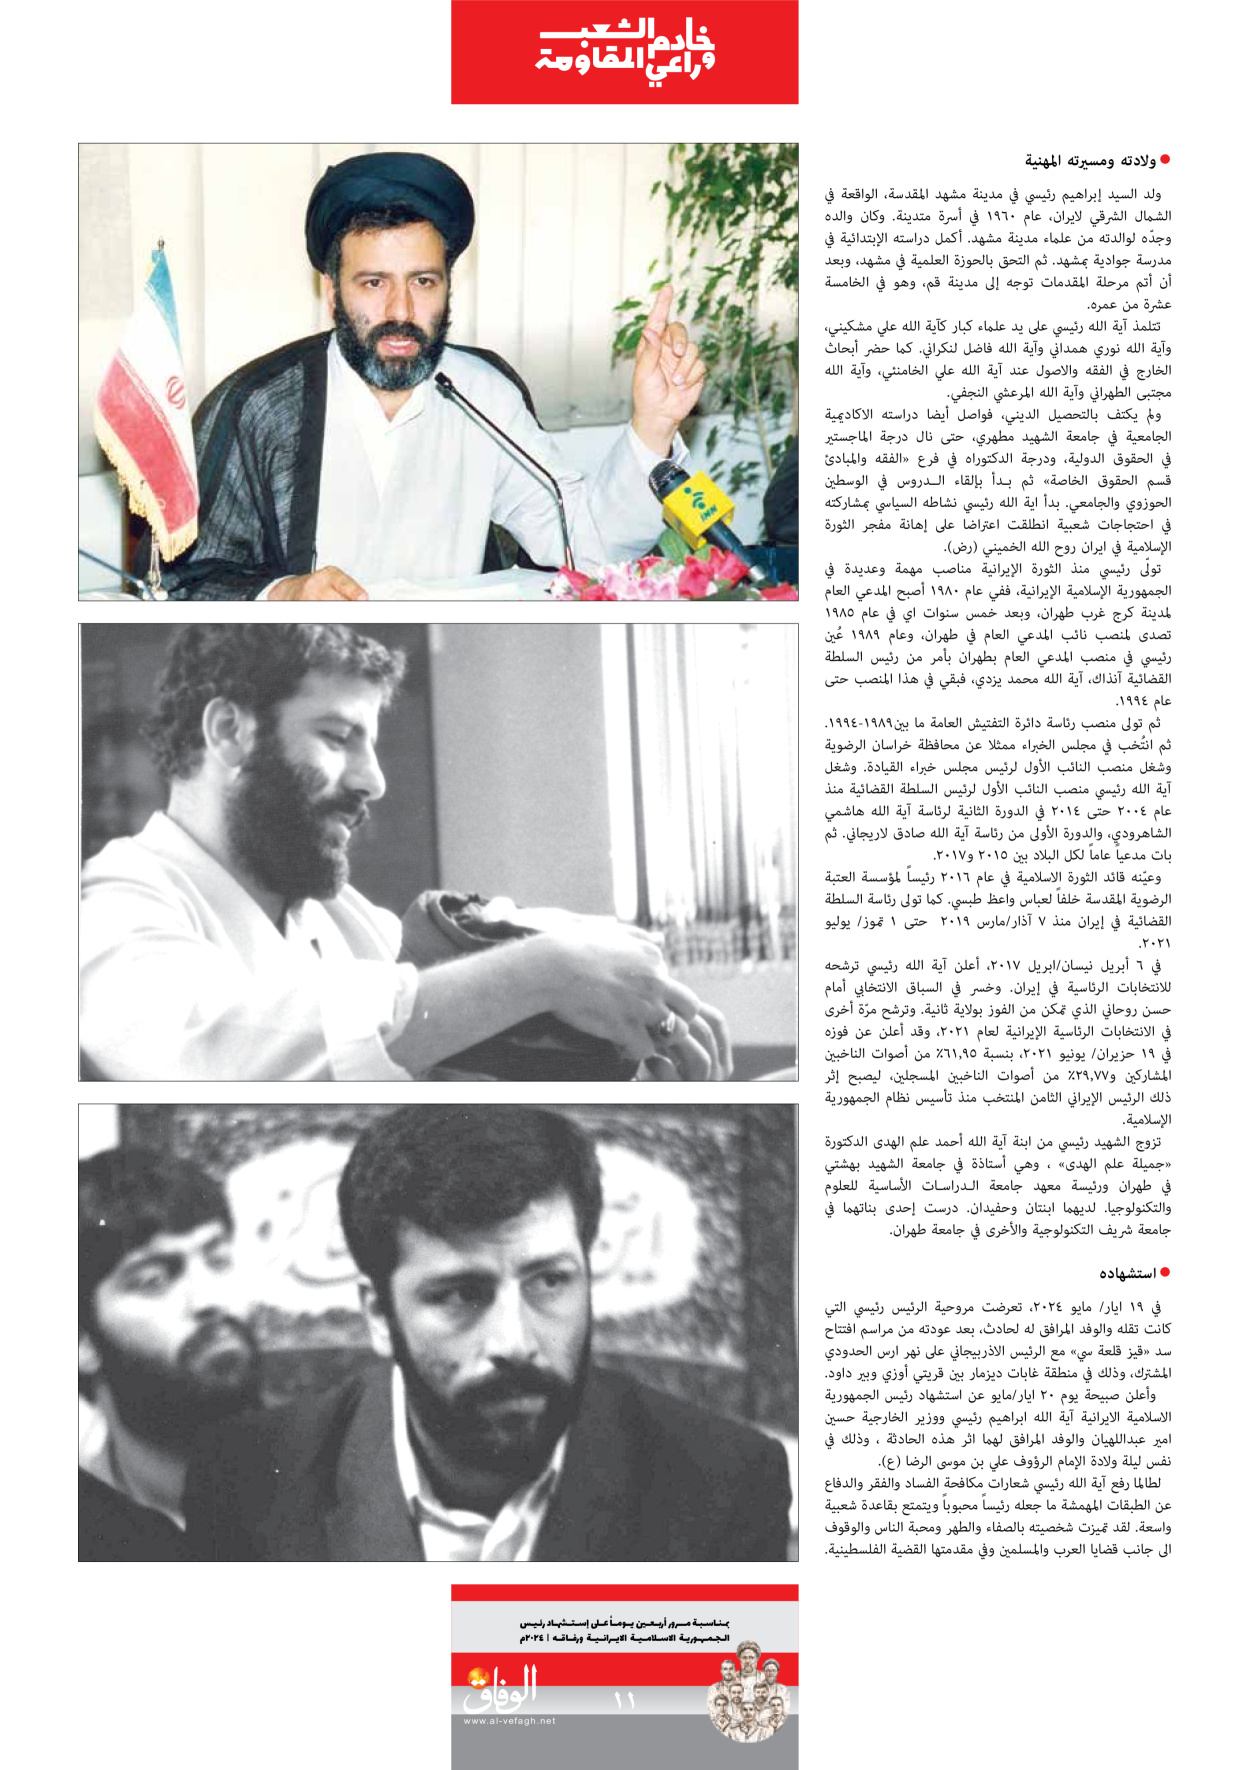 صحیفة ایران الدولیة الوفاق - ملحق ویژه نامه چهلم شهید رییسی - ٢٩ يونيو ٢٠٢٤ - الصفحة ۱۱